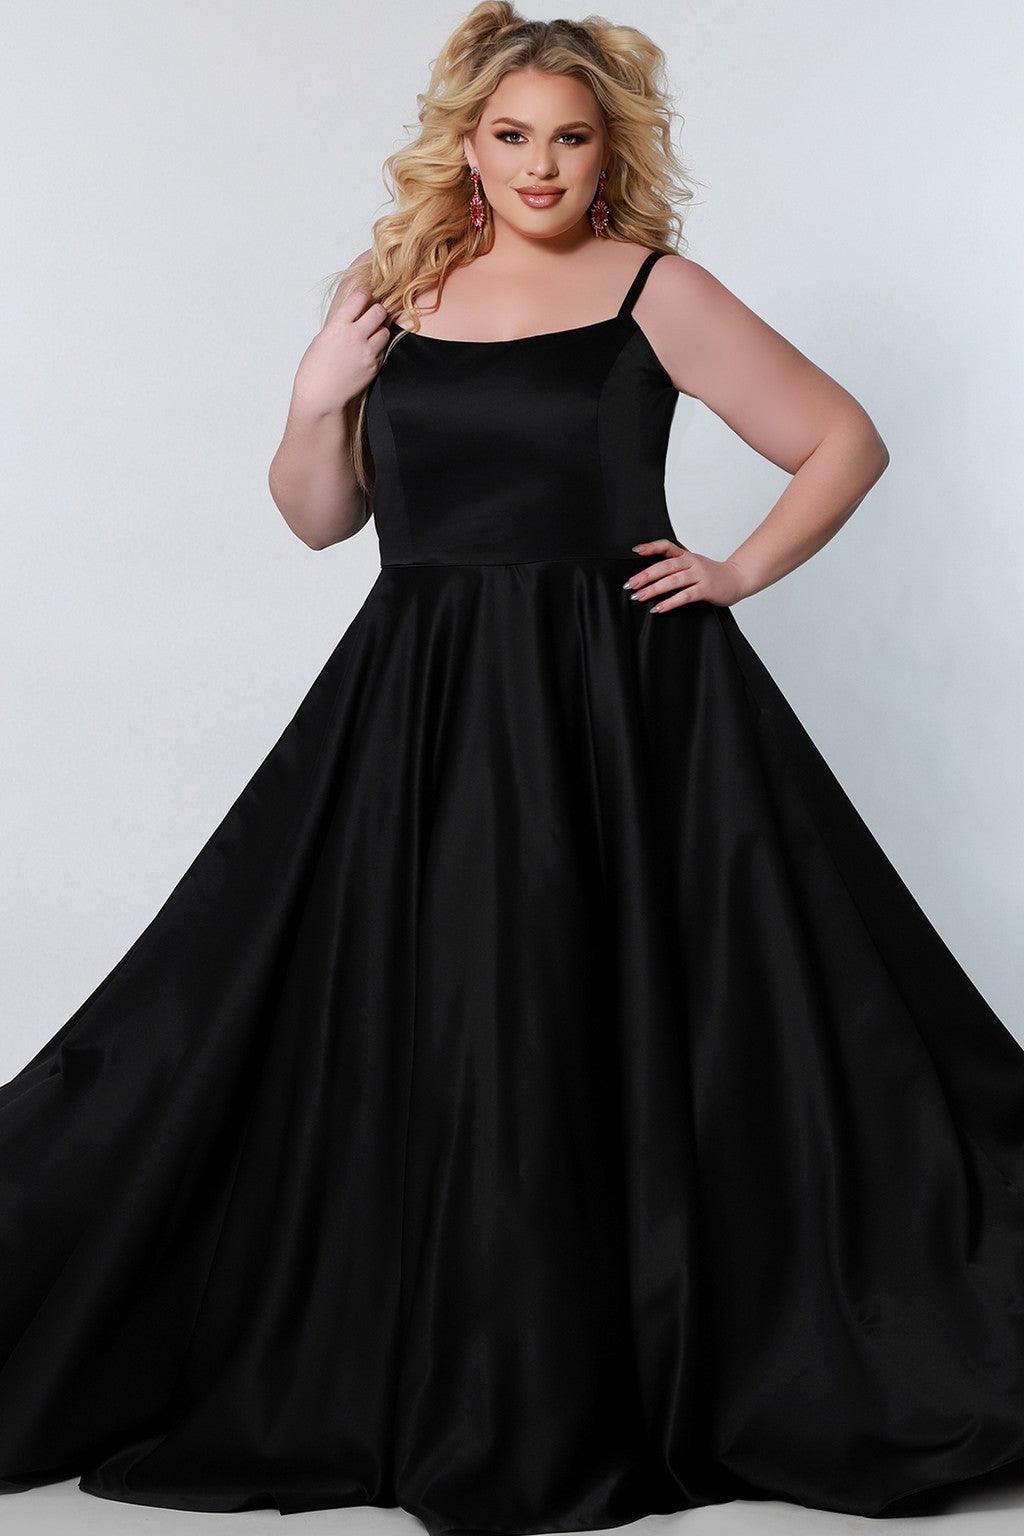 Plus Size Dresses Plus Size Long Formal Dress Black